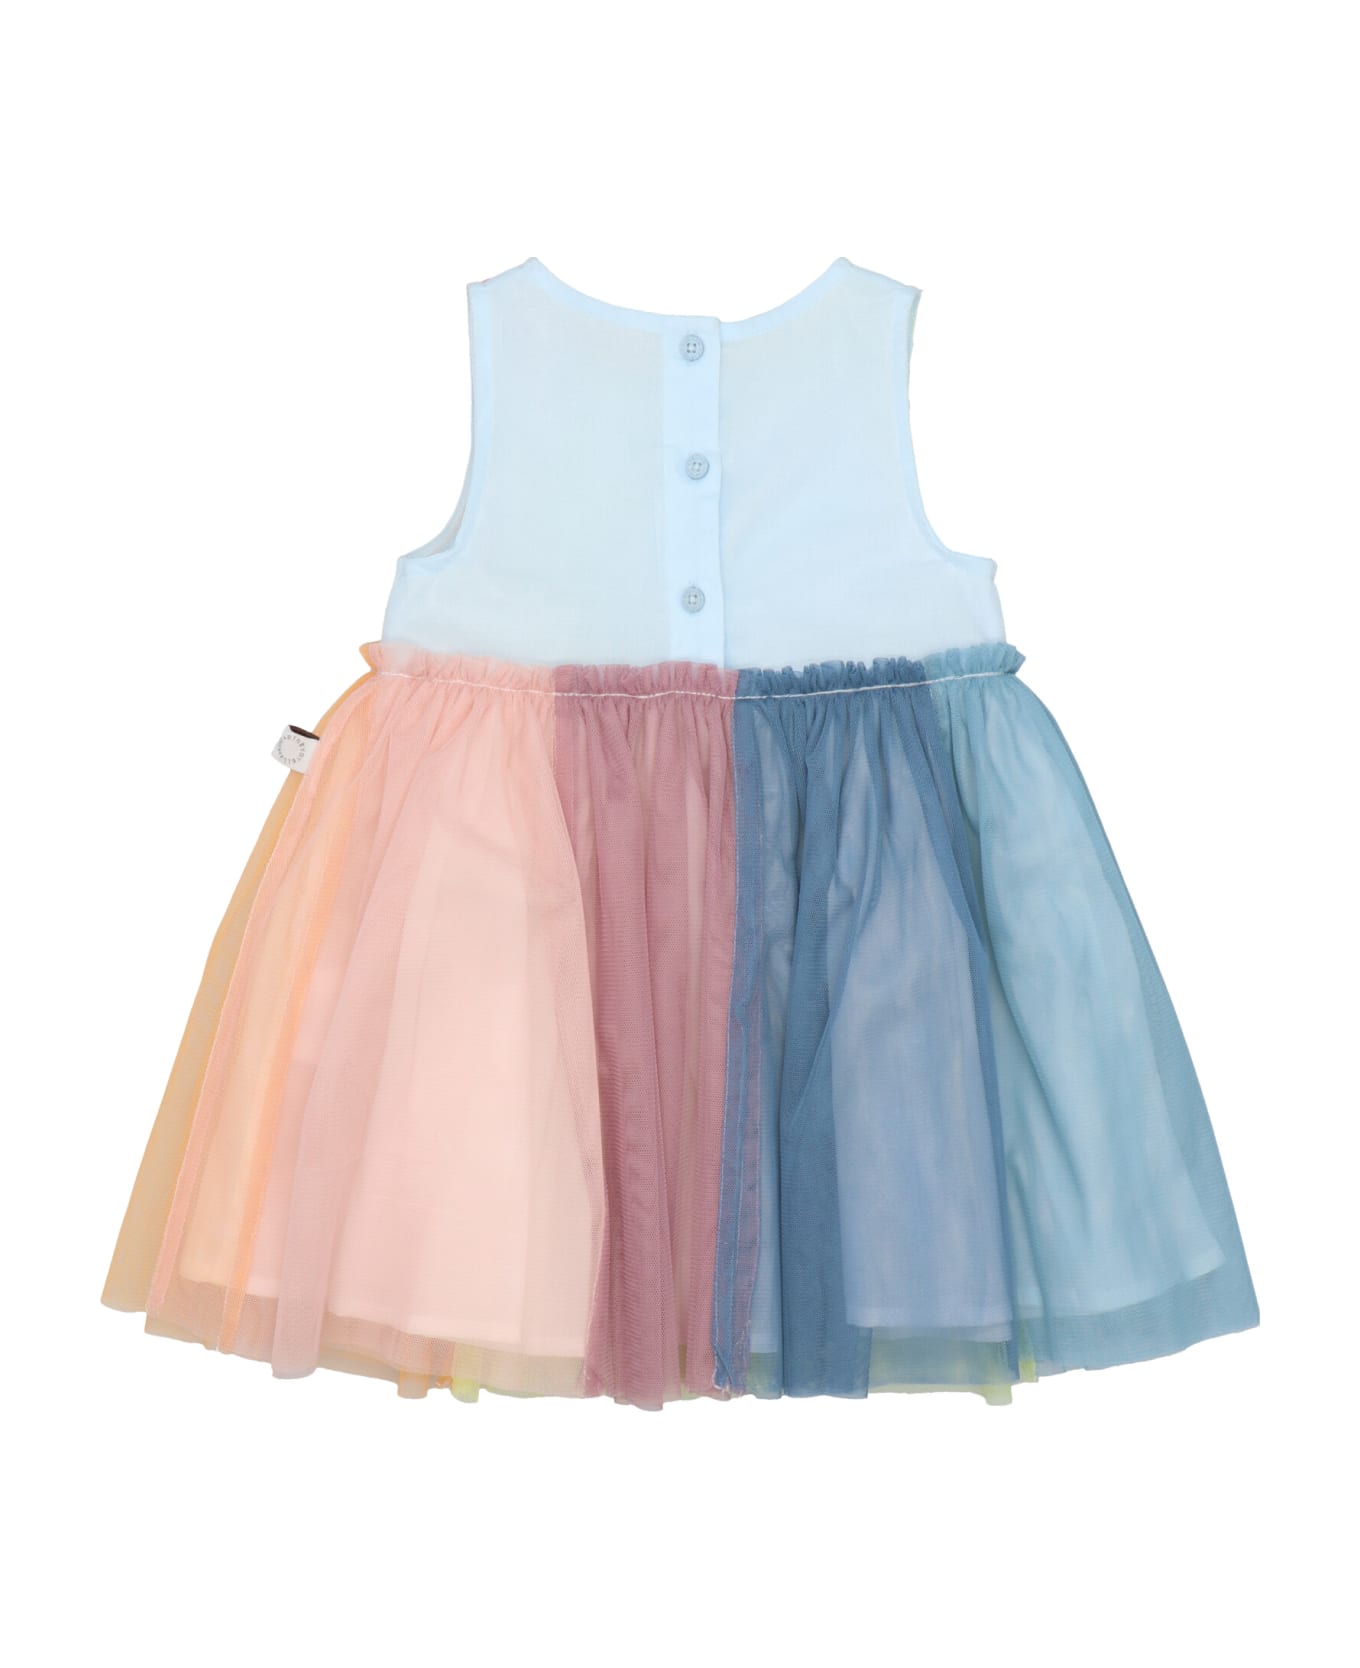 Stella mccartney McCartney Kids Multicolor Tulle Dress - Multicolor